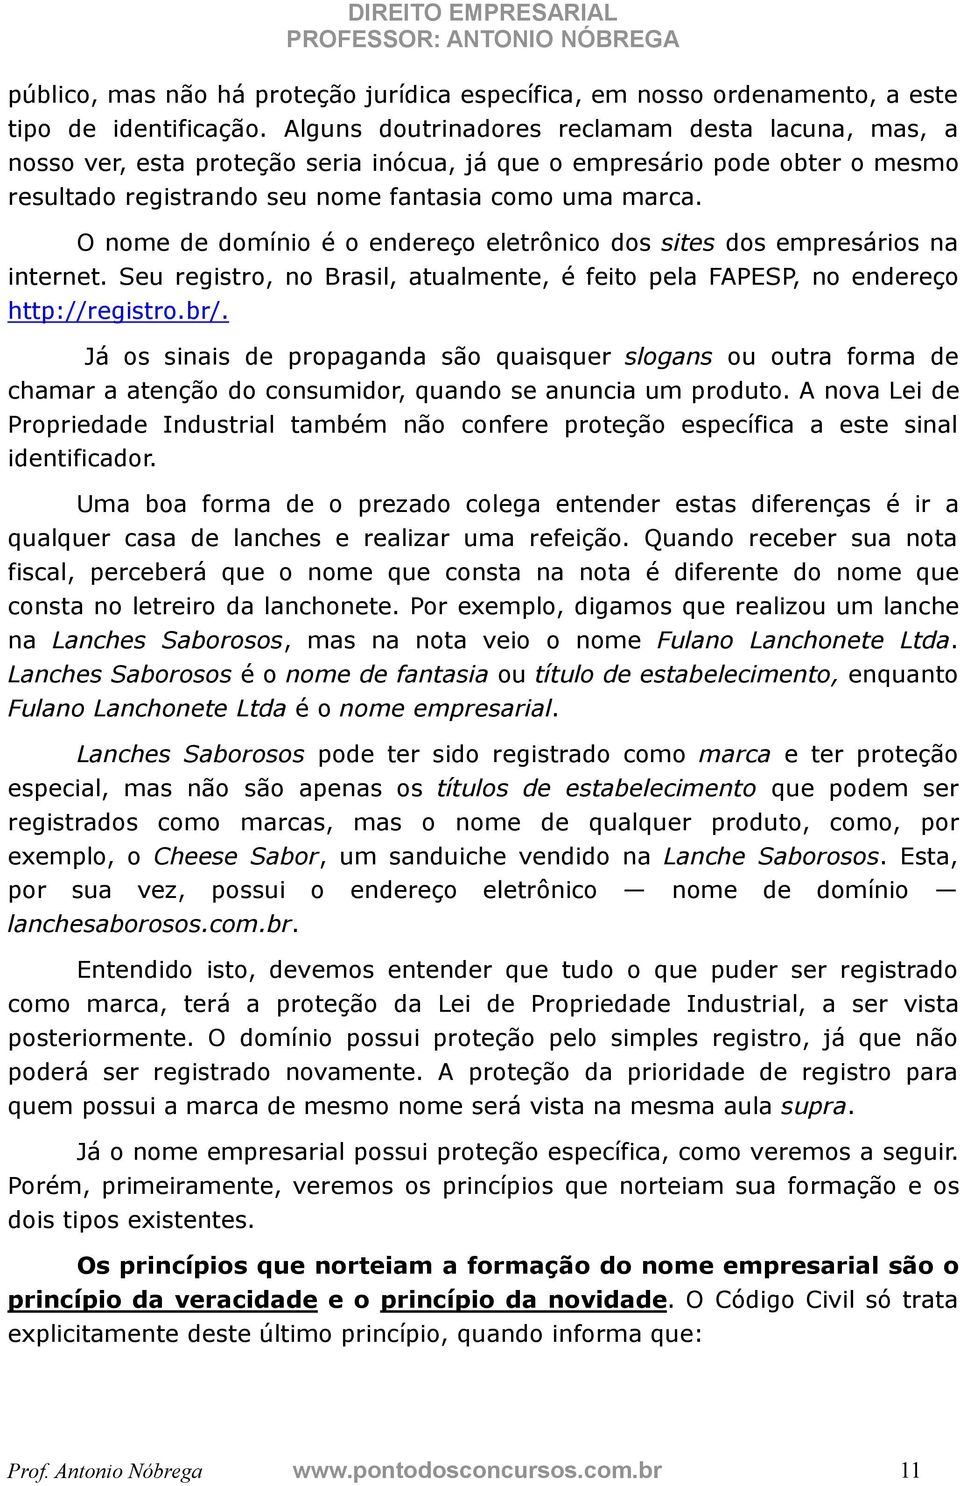 O nome de domínio é o endereço eletrônico dos sites dos empresários na internet. Seu registro, no Brasil, atualmente, é feito pela FAPESP, no endereço http://registro.br/.